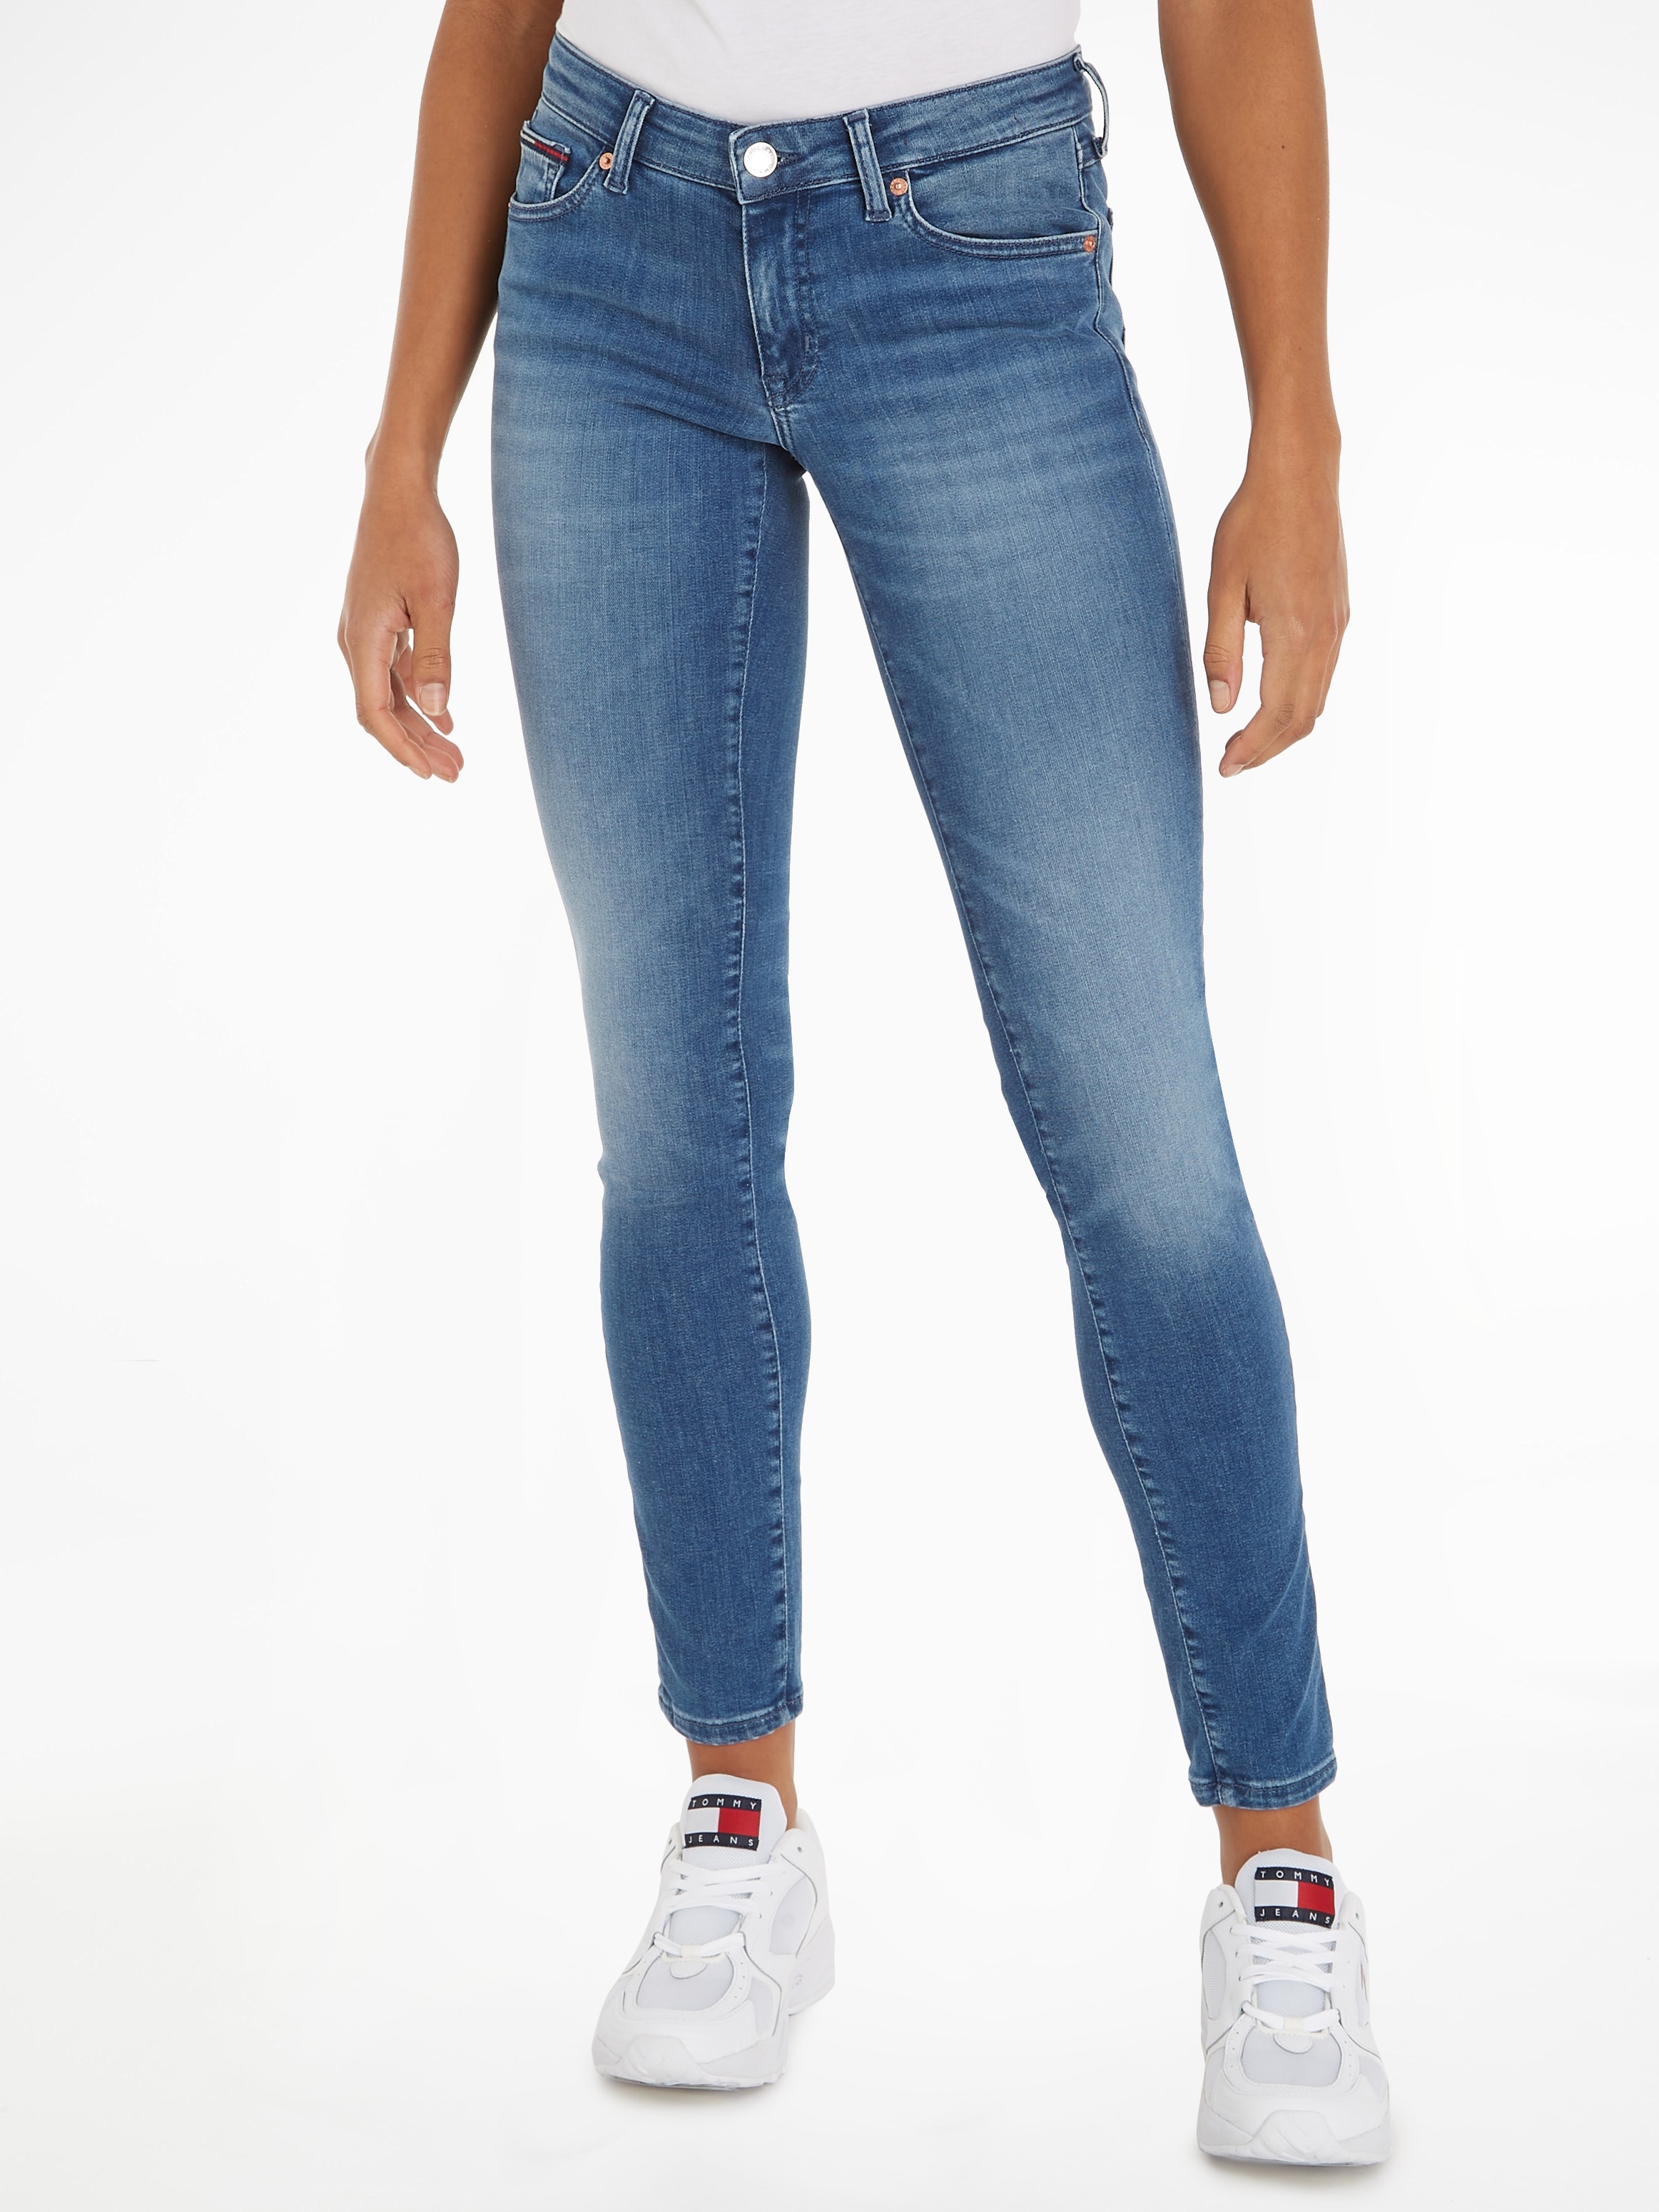 Tommy Jeans Skinny-fit-Jeans, mit dezenten Labelapplikationen bei ♕